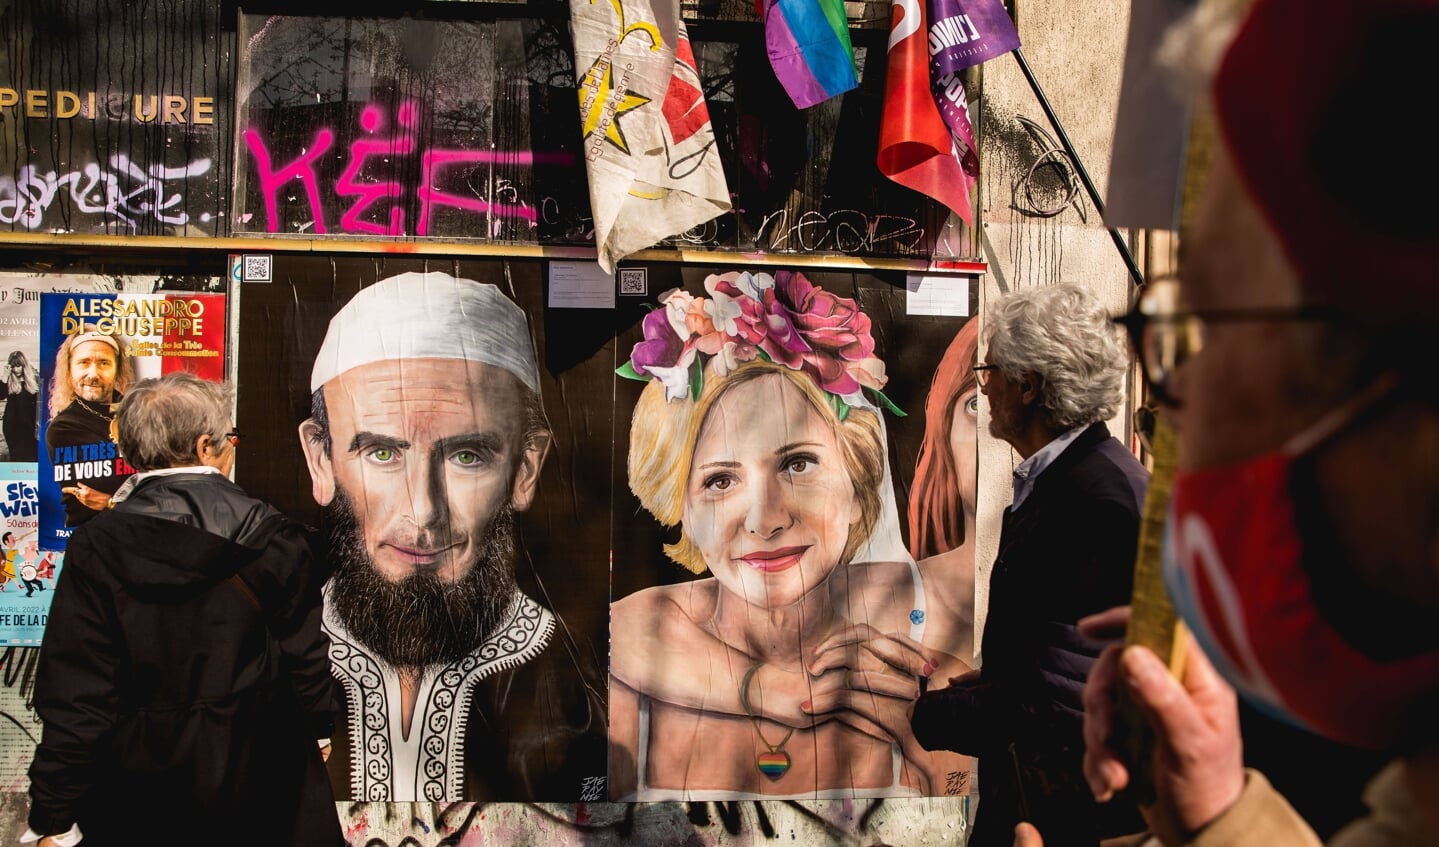 Posters met daarop de Franse presidentskandidaten Eric Zemmour en Valerie Pecresse, respectievelijk als moslim en lhbt'er.